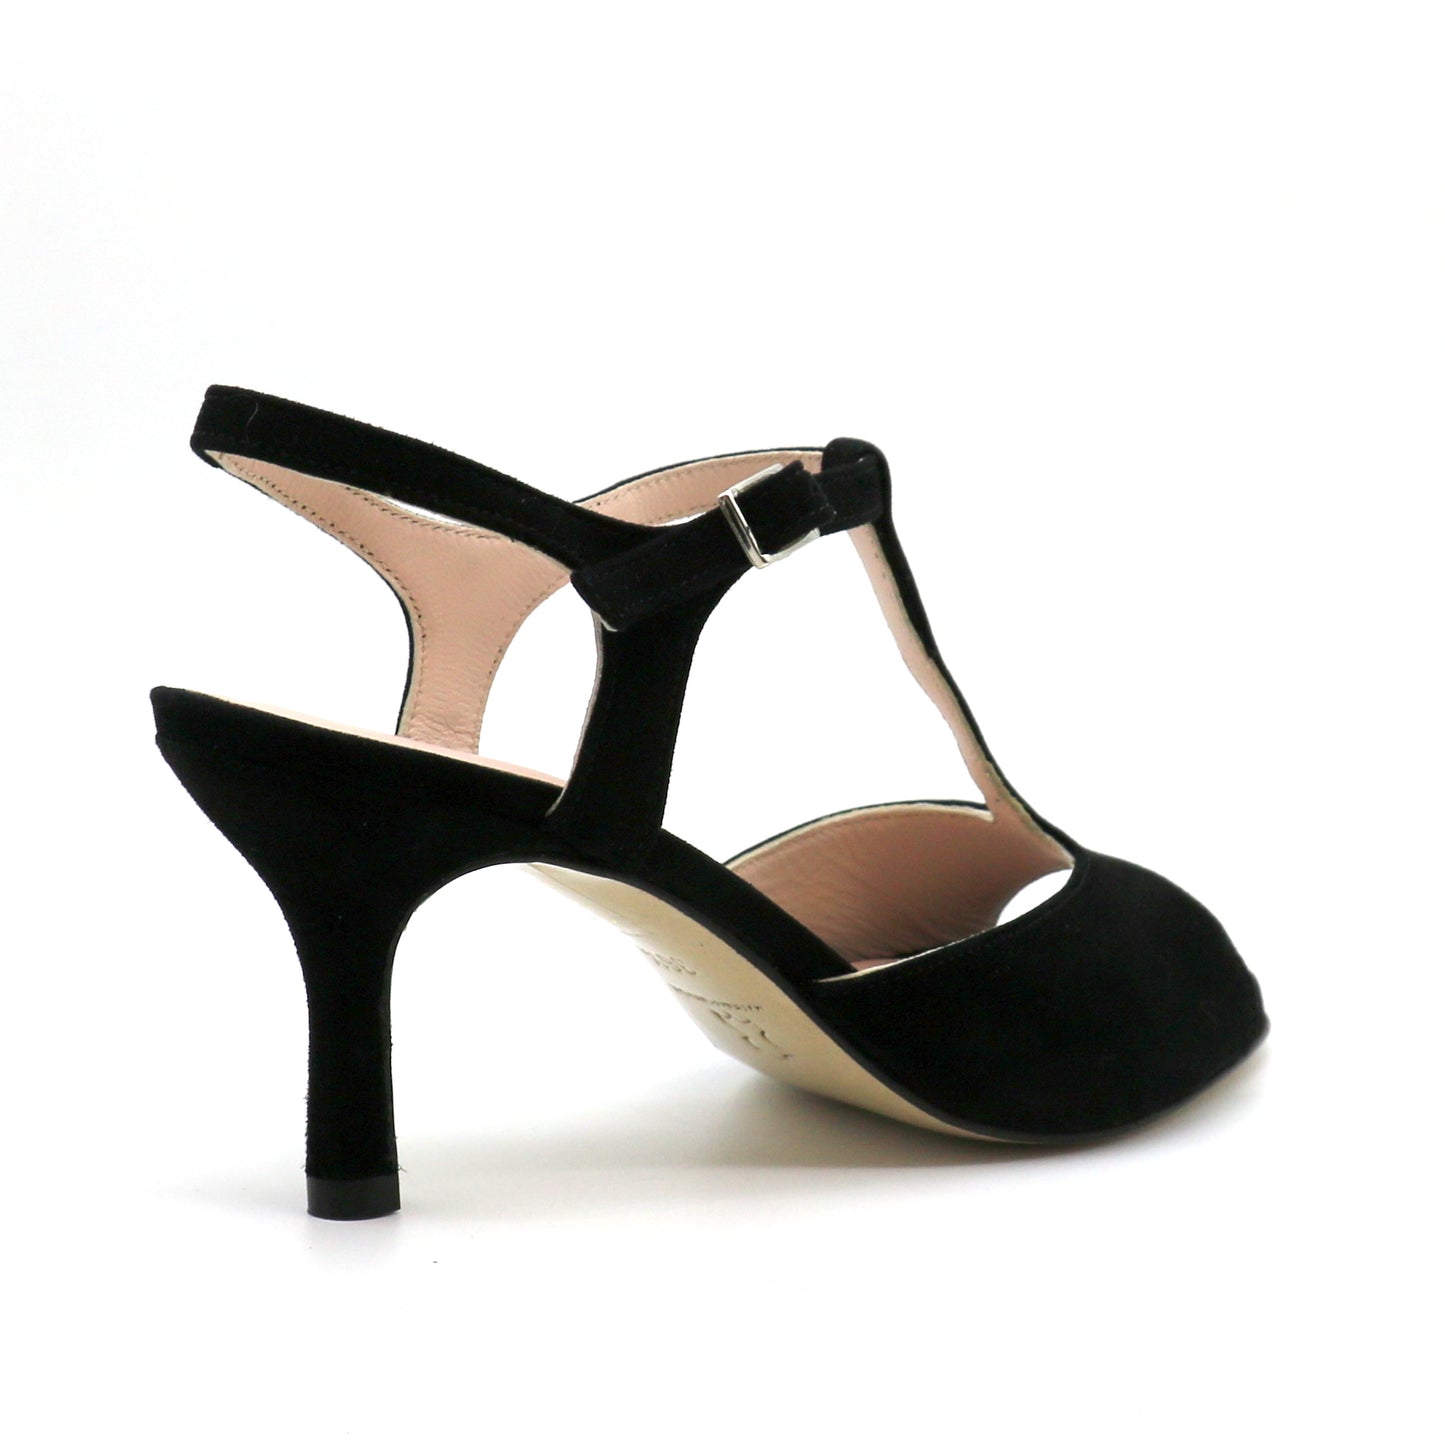 Sencillo black suede snake style heels 7cm